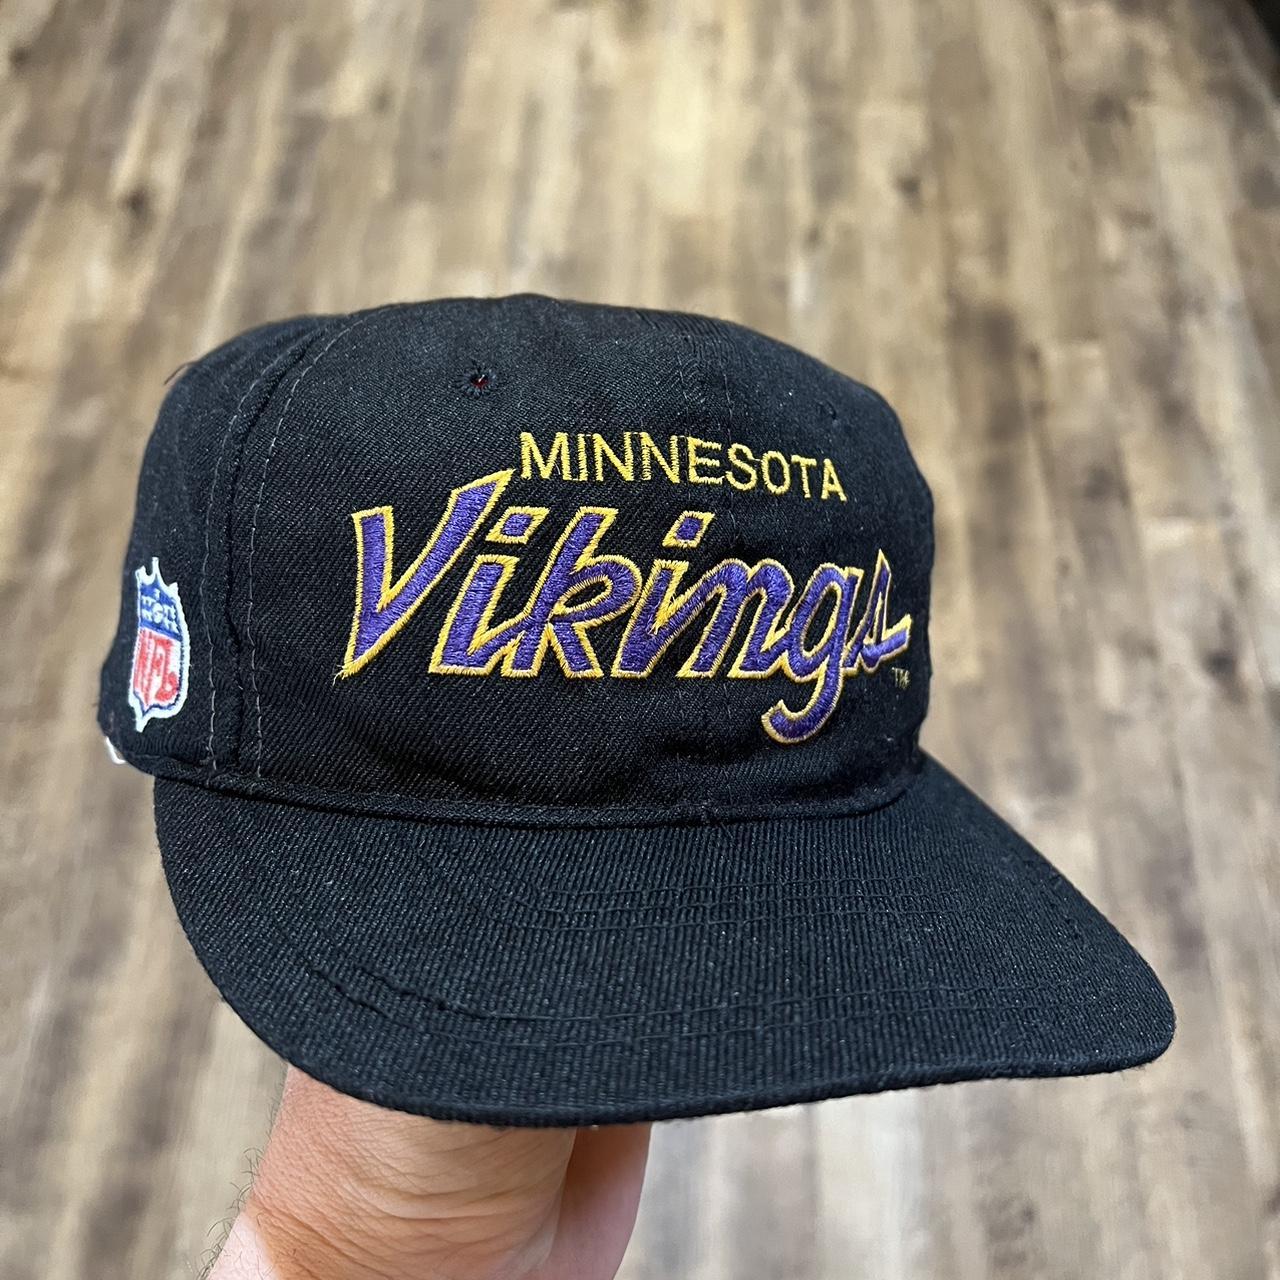 Rare Vintage Hats in Stock | Vintage Minnesota Snapback